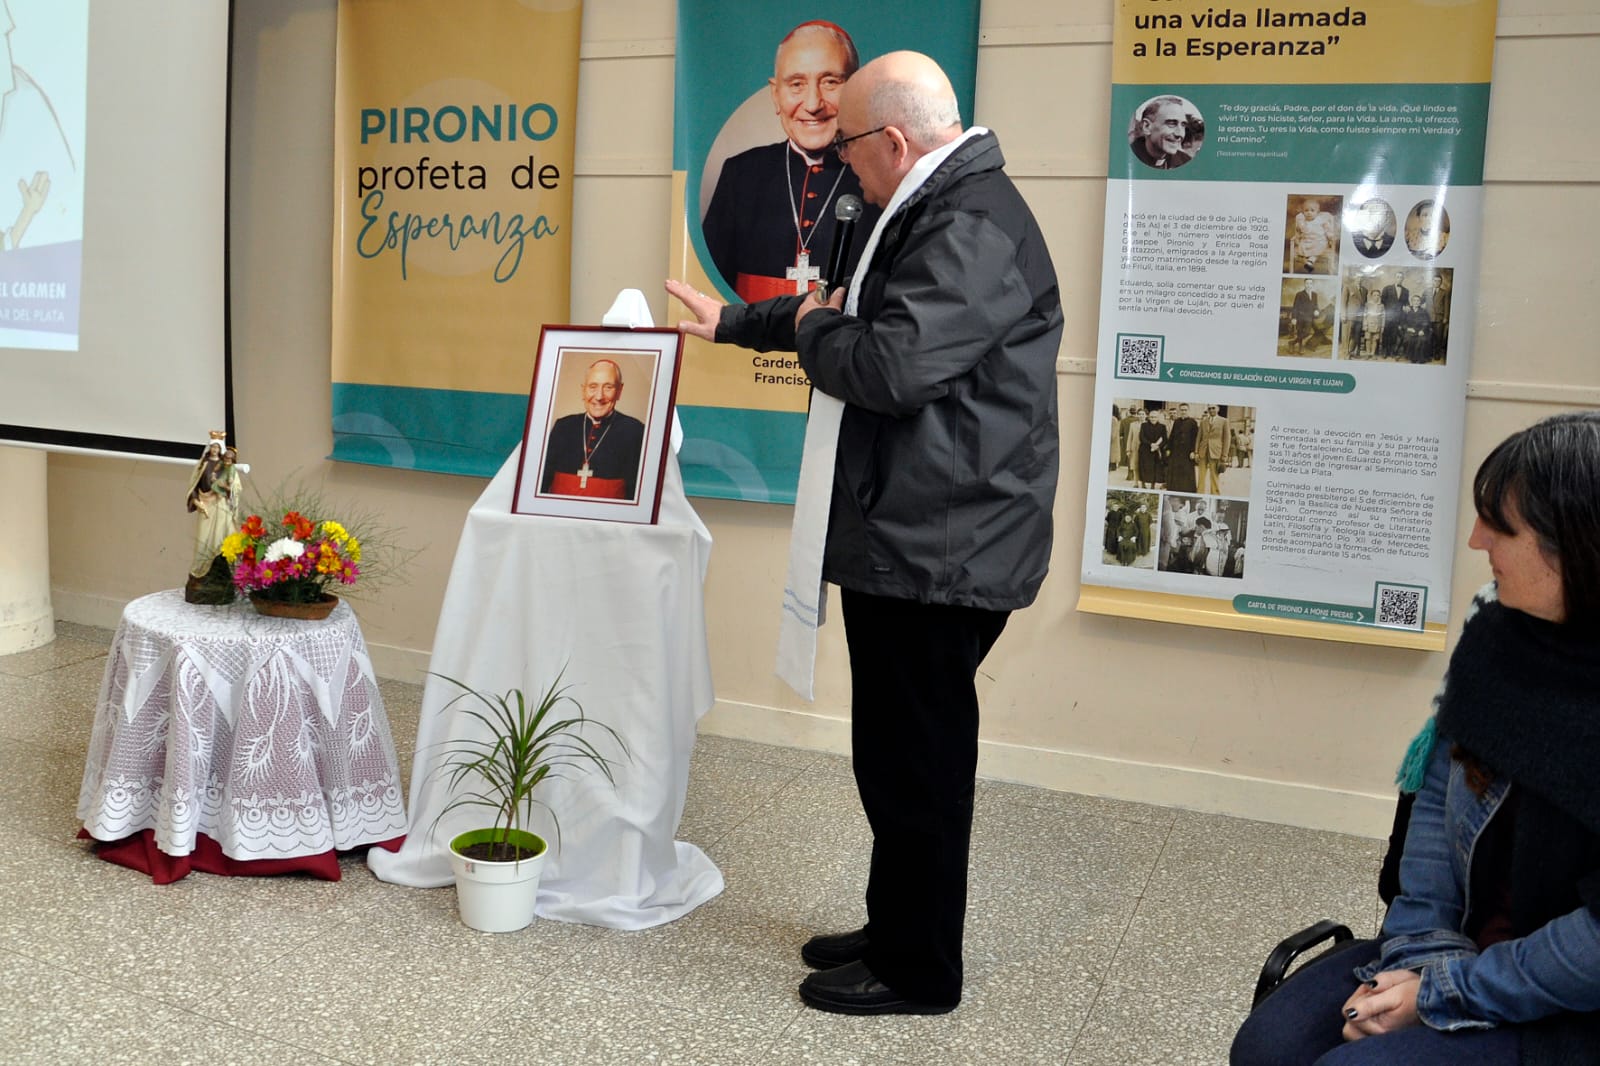 Se entronizó una imagen del Beato Eduardo Pironio en el oratorio del Colegio N. S. del Carmen